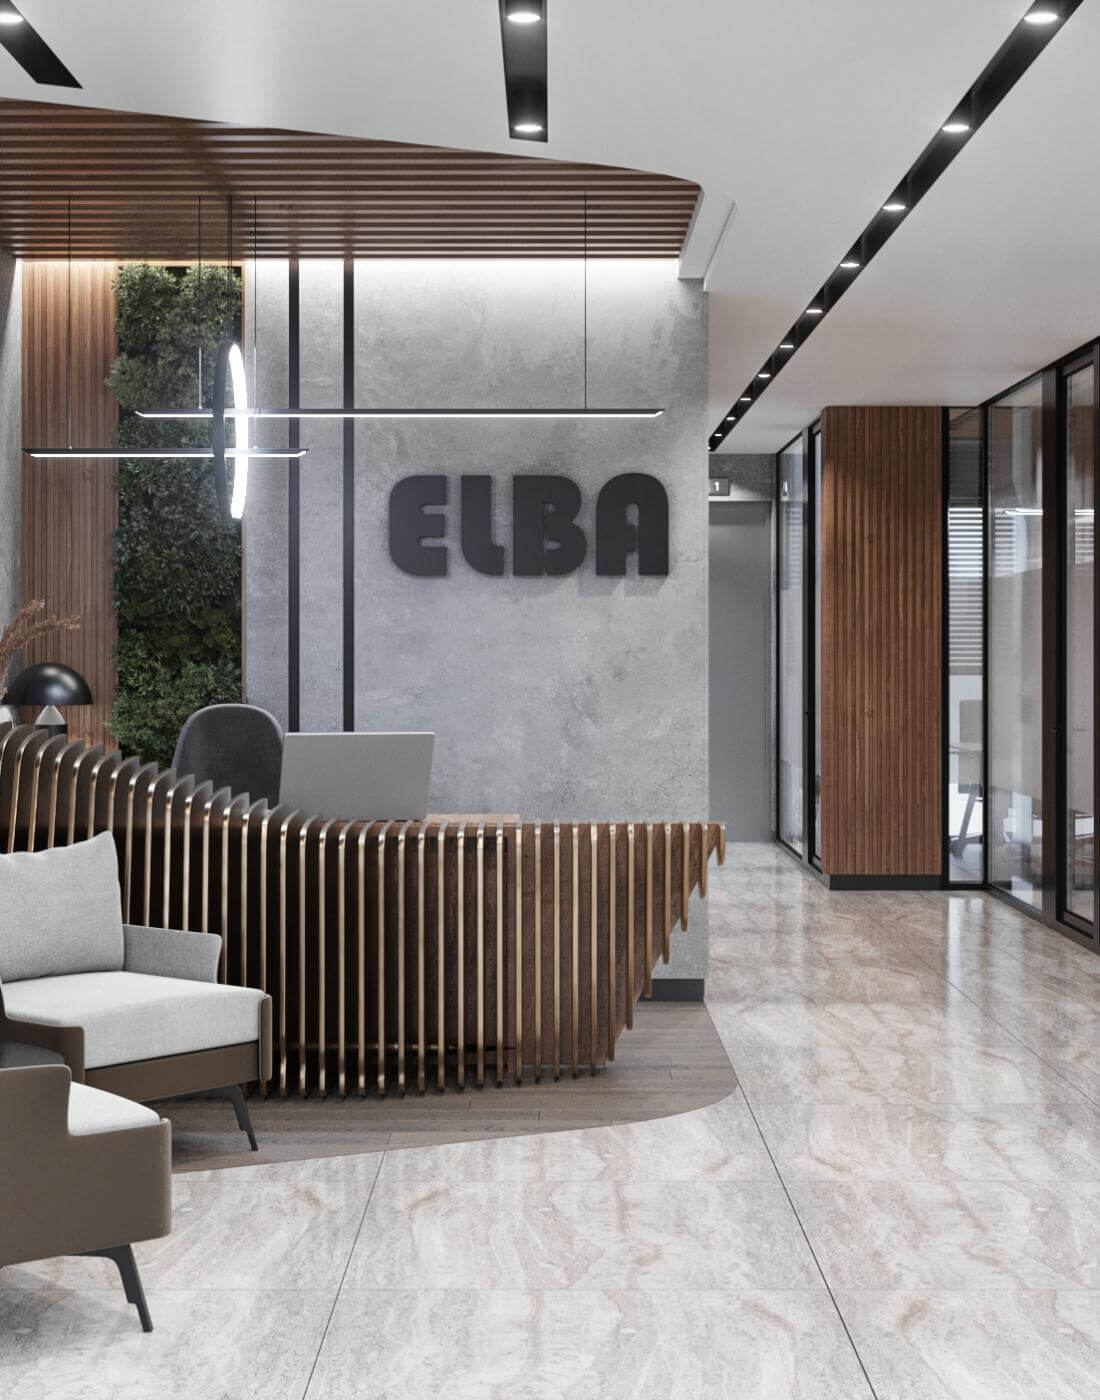   Elba - Berg Ofis Genel